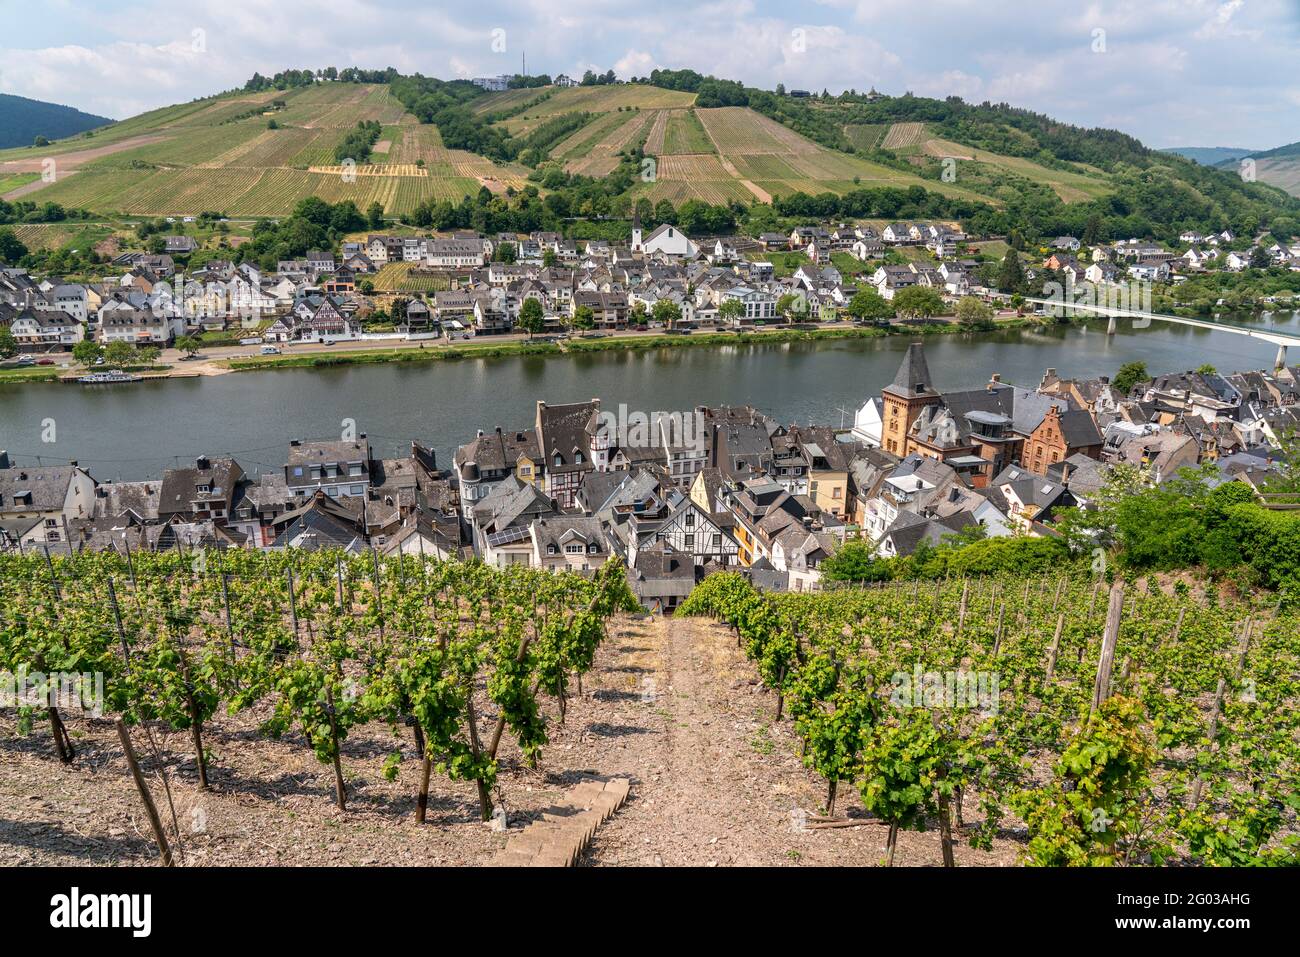 Weinberge, die Mosel und der Ort Zell, Rheinland-Pfalz, Deutschland  | Vineyard,  Moselle river and the town Zell, Rhineland-Palatinate, Germany Stock Photo